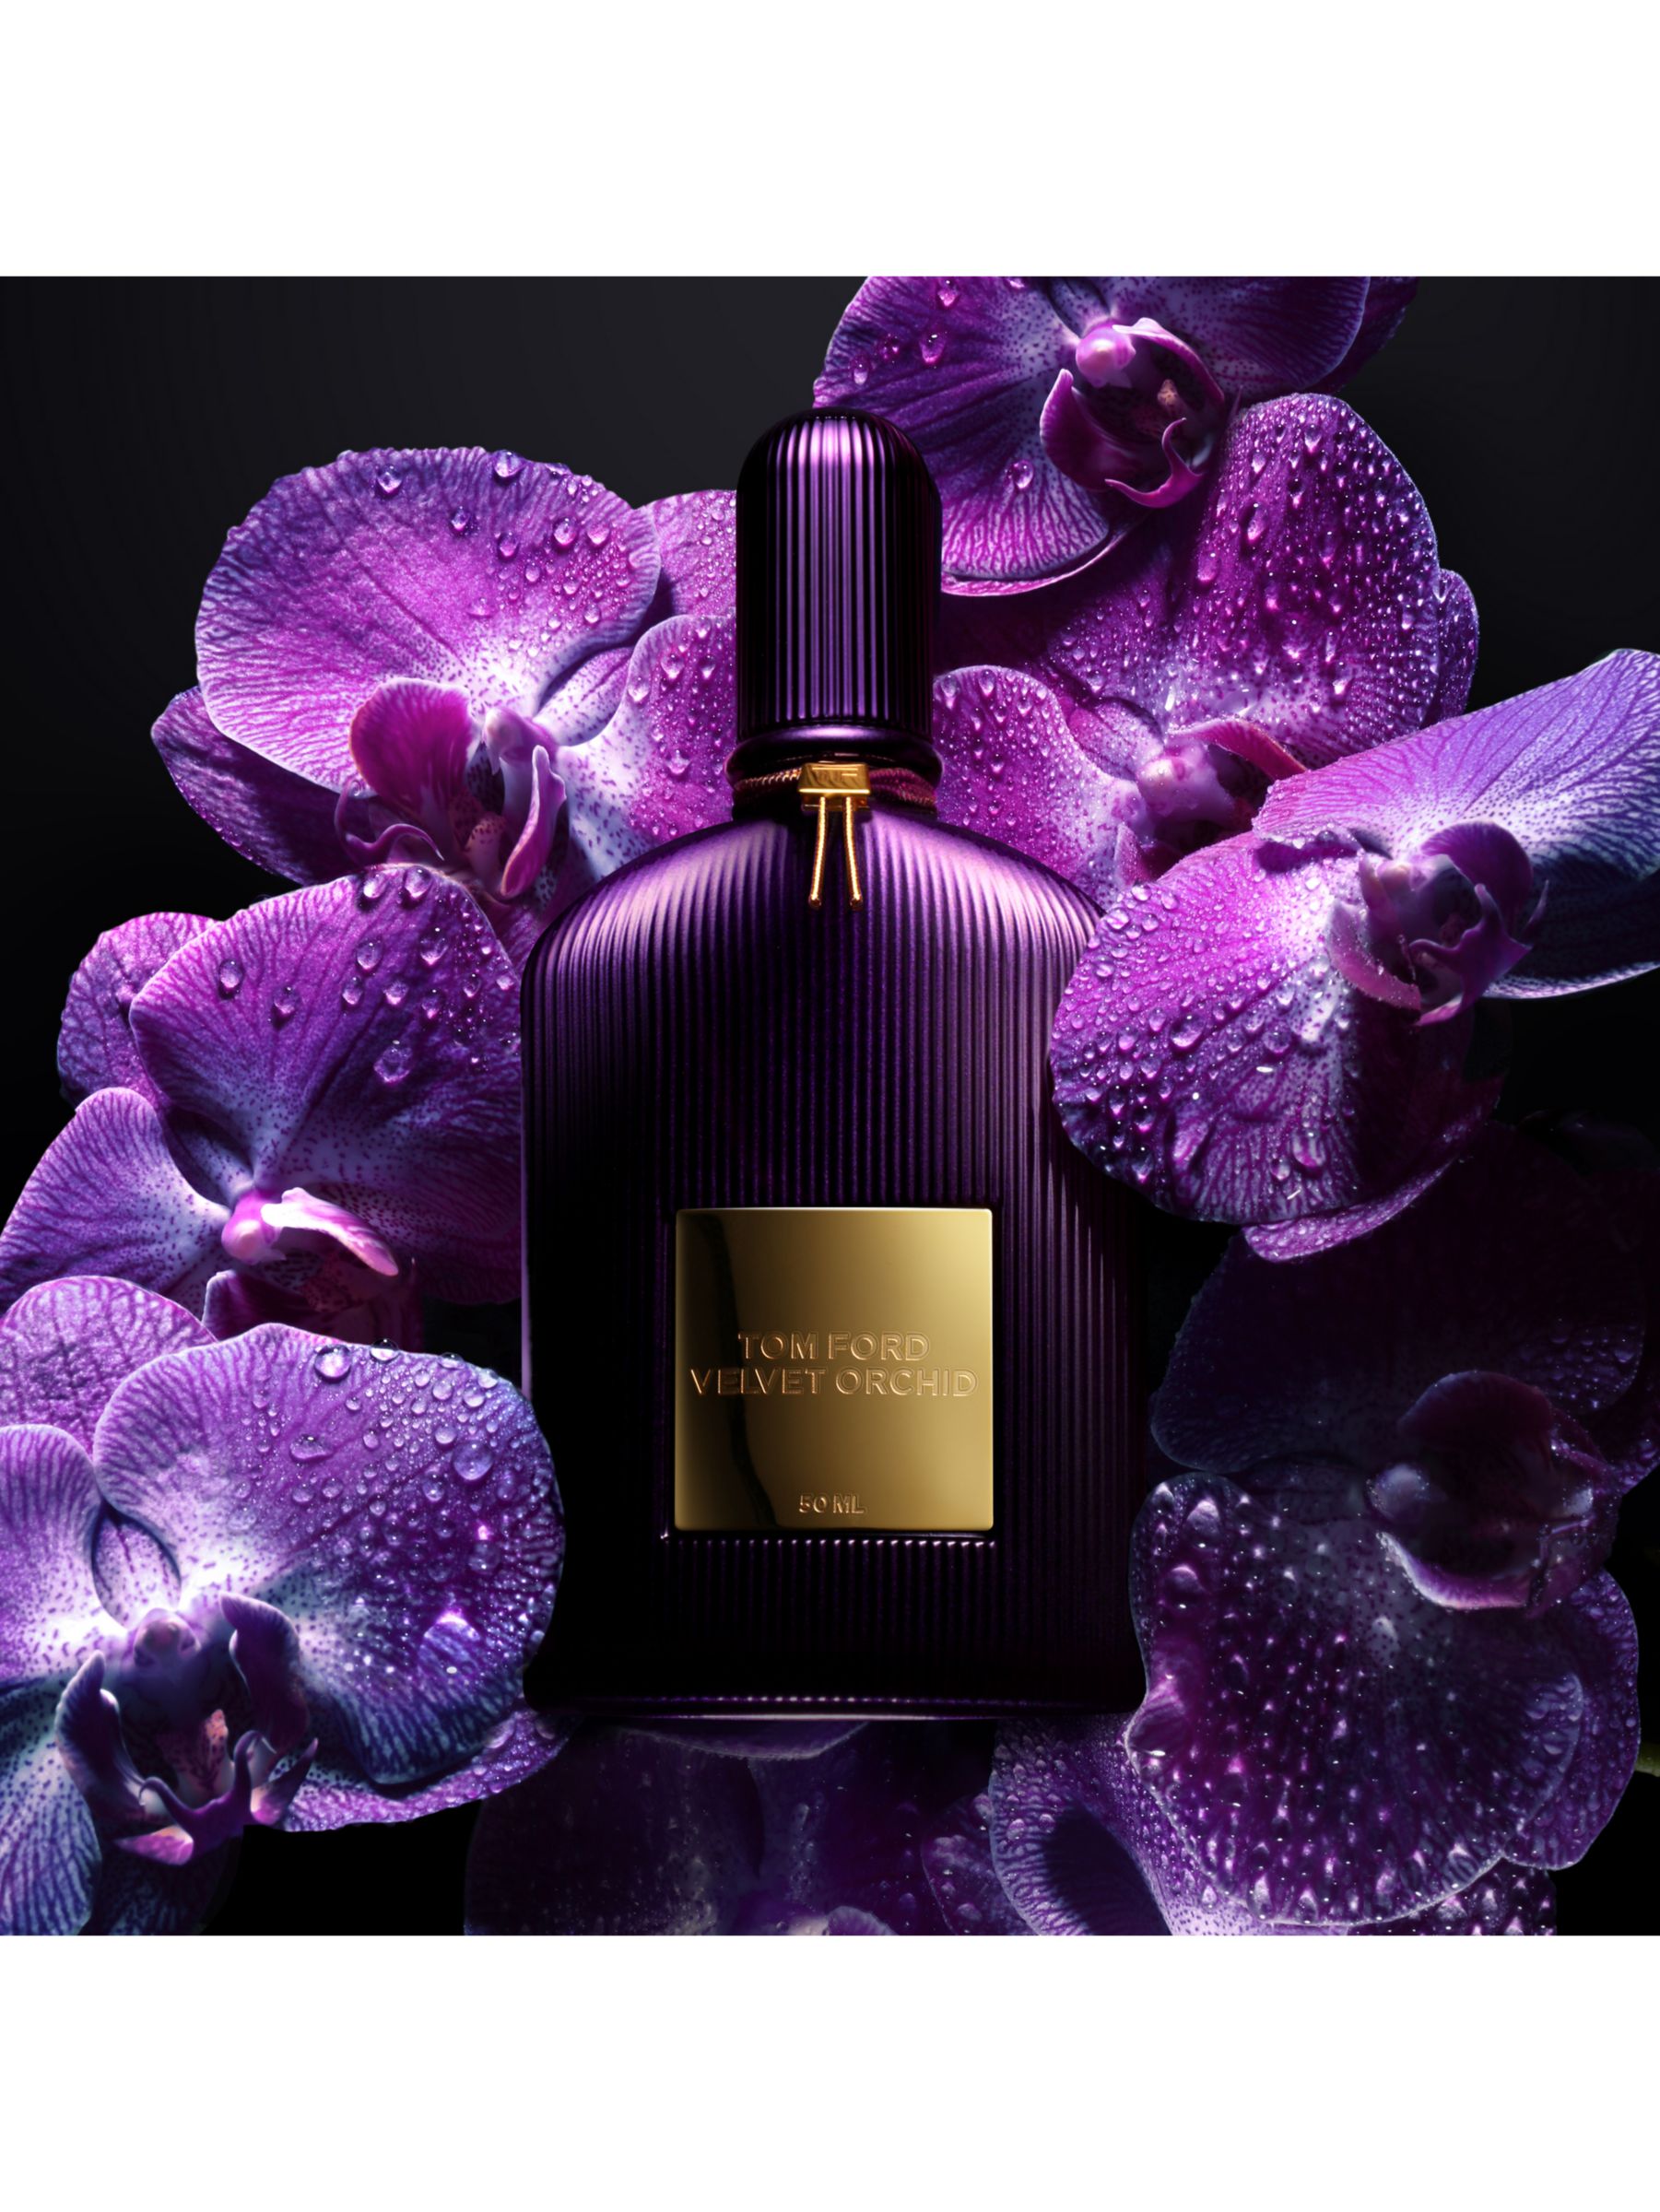 TOM FORD Velvet Orchid Eau de Parfum, 50ml at John Lewis & Partners